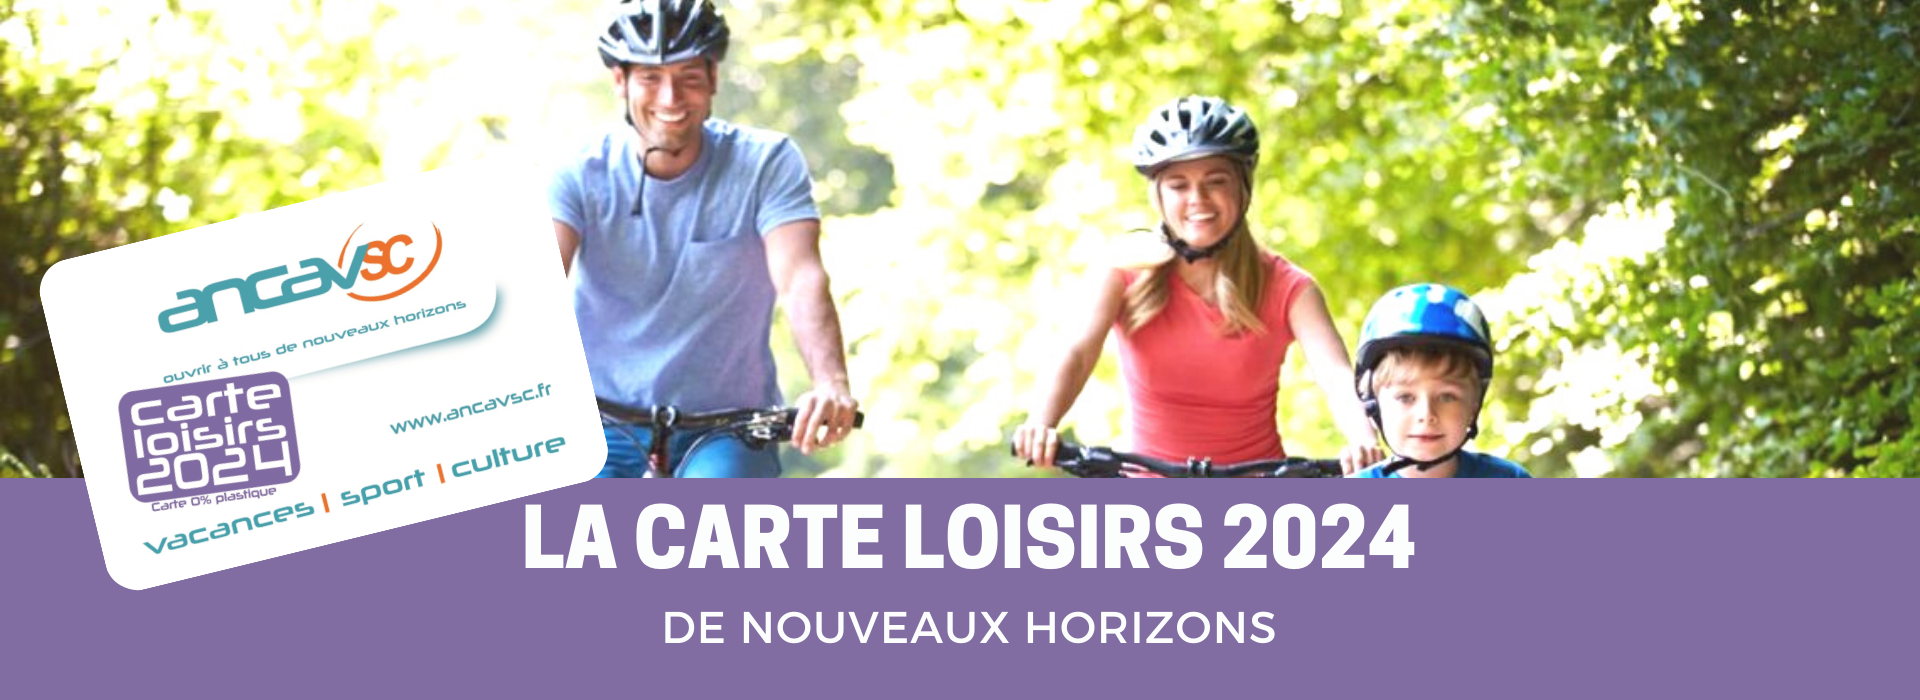 Catalogue Hors-saison 2024